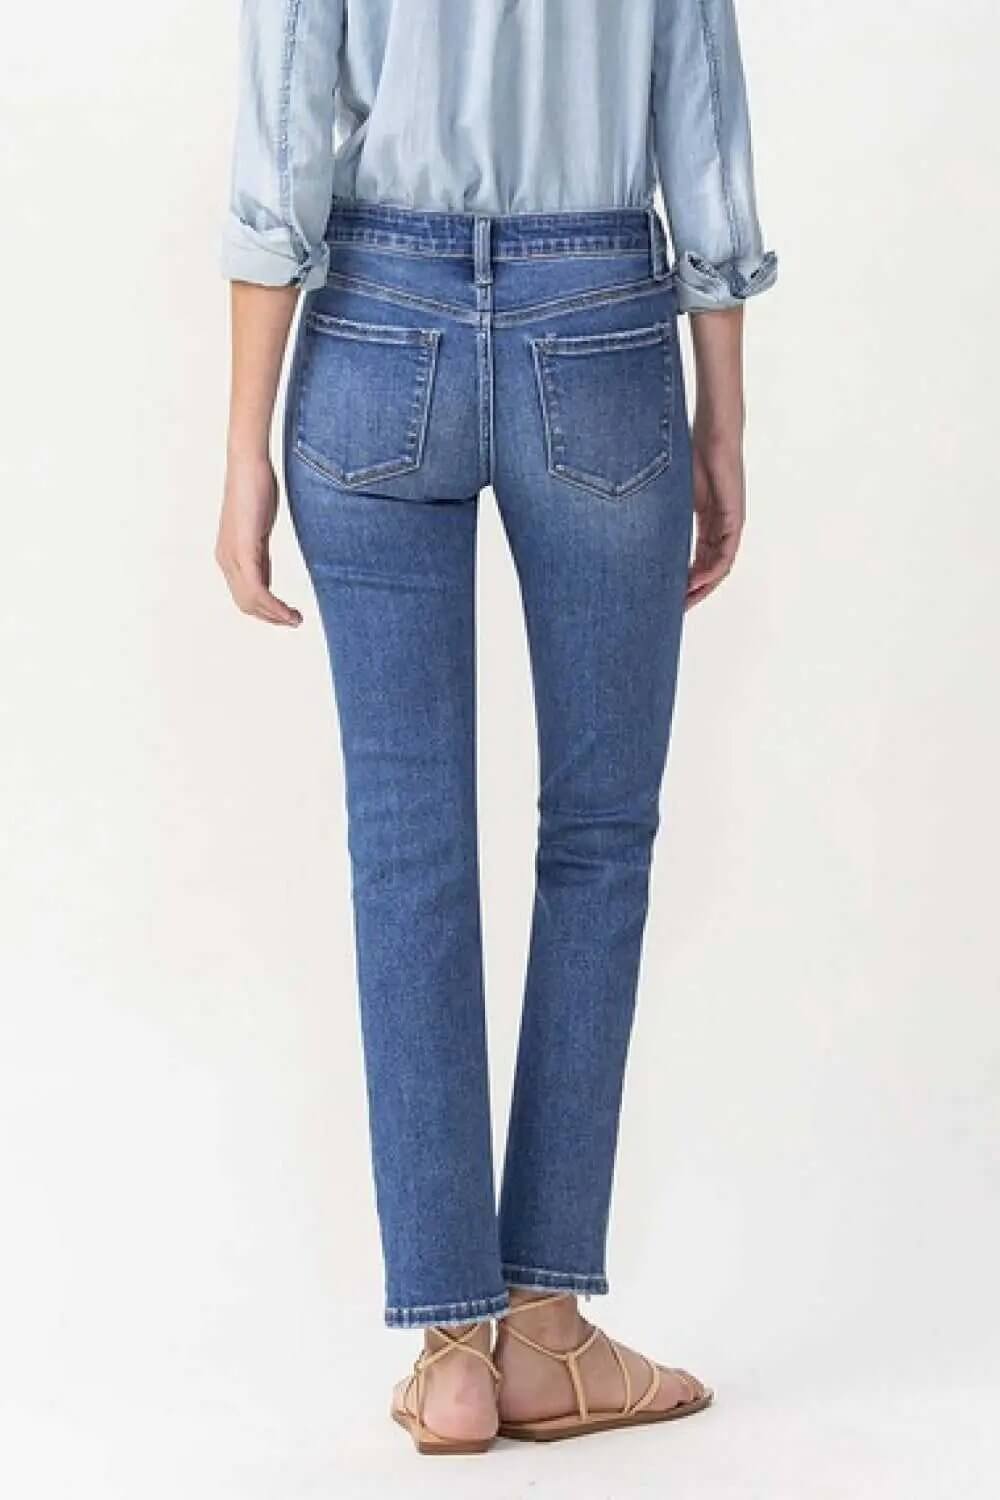 Lovervet by Vervet Full Size Mid Rise Slim Ankle Straight Jeans